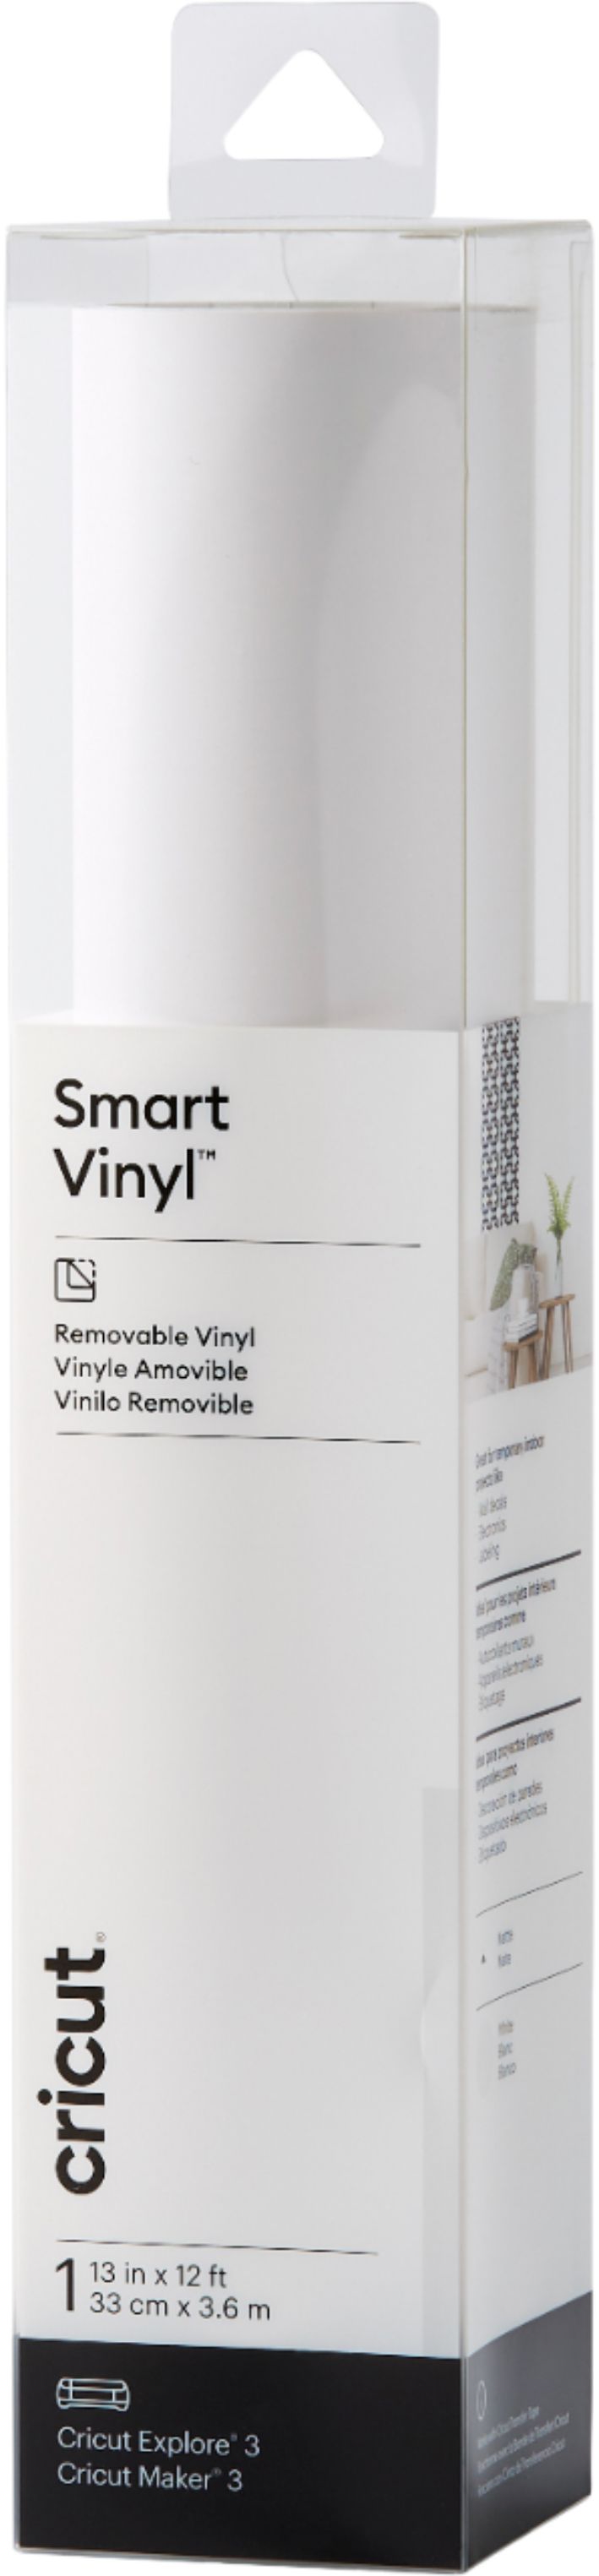 Best Buy: Cricut Smart Vinyl – Removable 12 ft 2008934